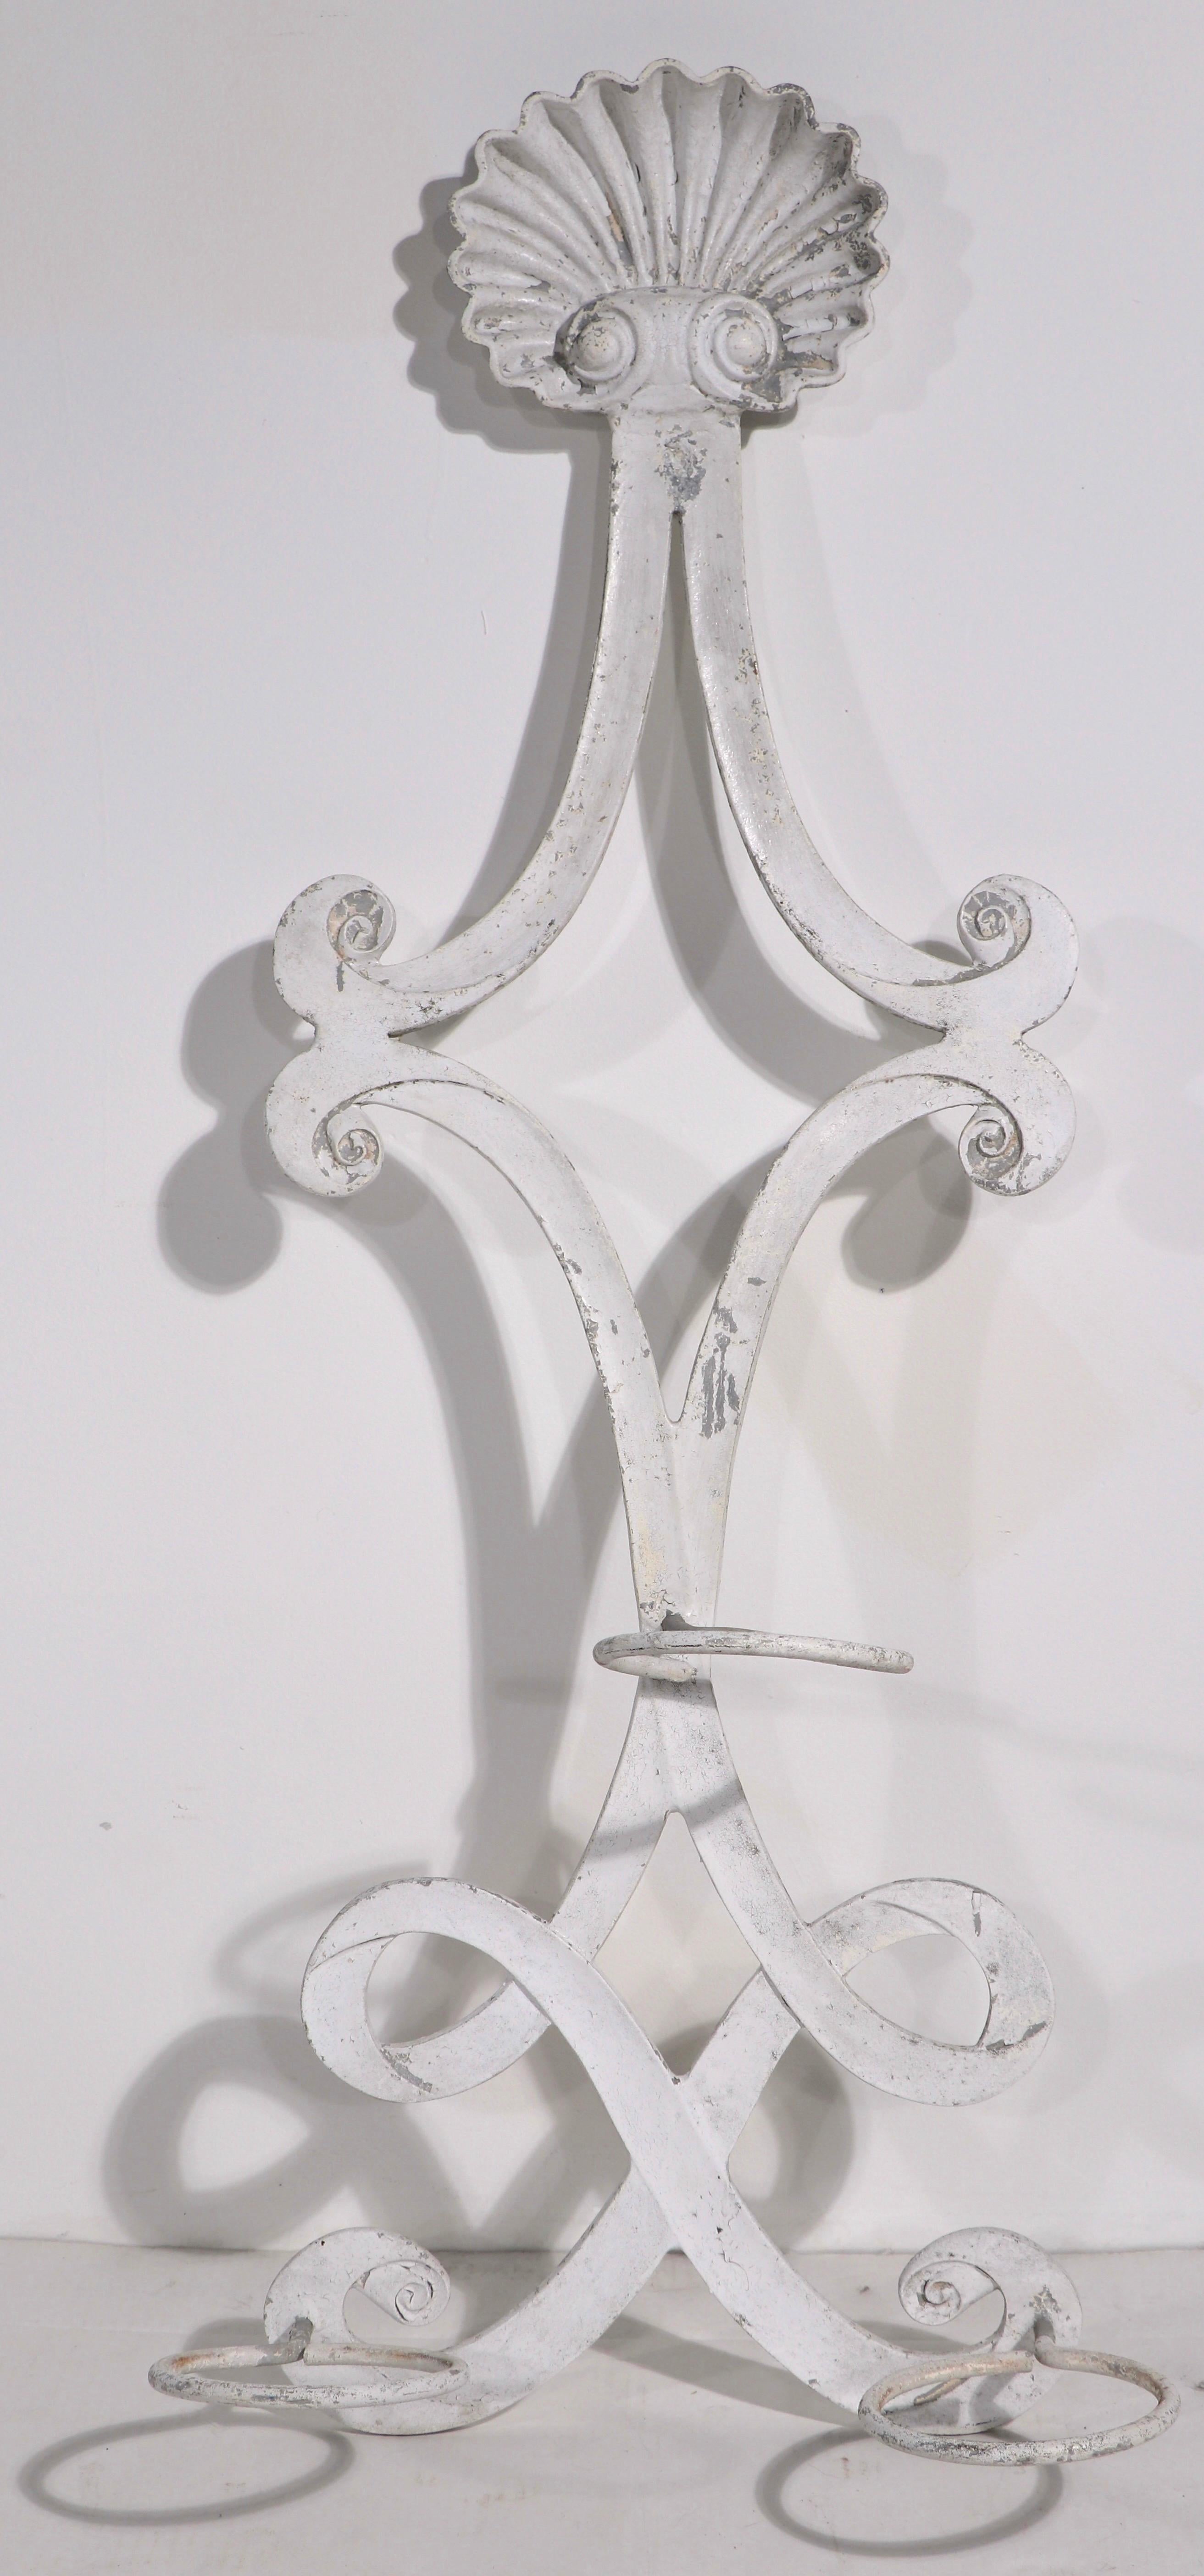 Ungewöhnlicher Wand-Pflanzkübel aus Aluminiumguss, der Molla zugeschrieben wird. Schneckenförmiger Korpus mit Muschelaufsatz, mit drei Pflanzringen, jeder Ring 5,5 Zoll Durchmesser. Elegantes Art-Déco-Design, guter Originalzustand, keine